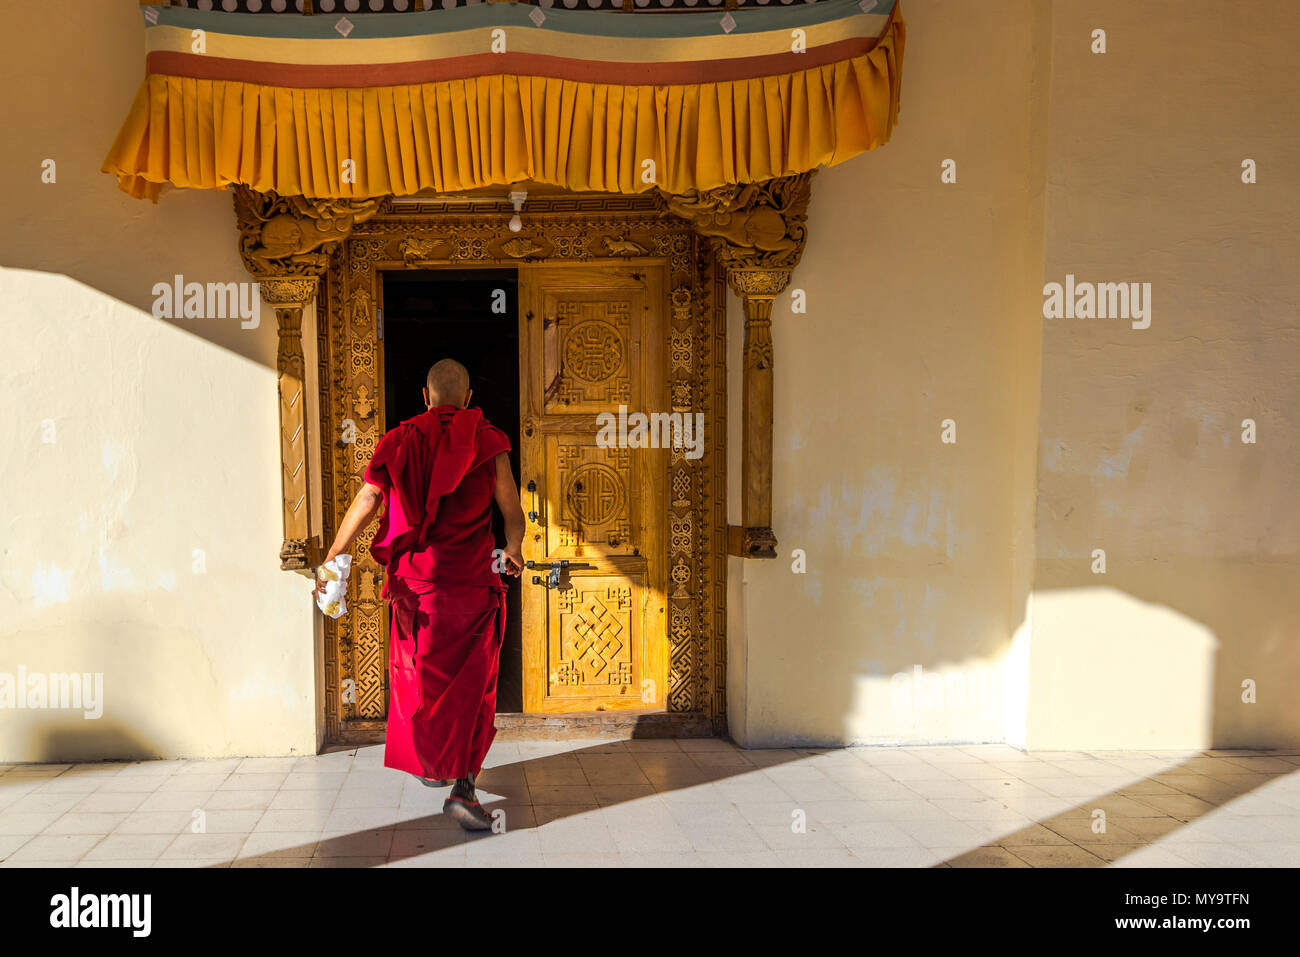 Tibetischer Mönch betritt das Gebäude durch eine reich geschnitzte Tür.Indien Ladakh 2015 Stockfoto